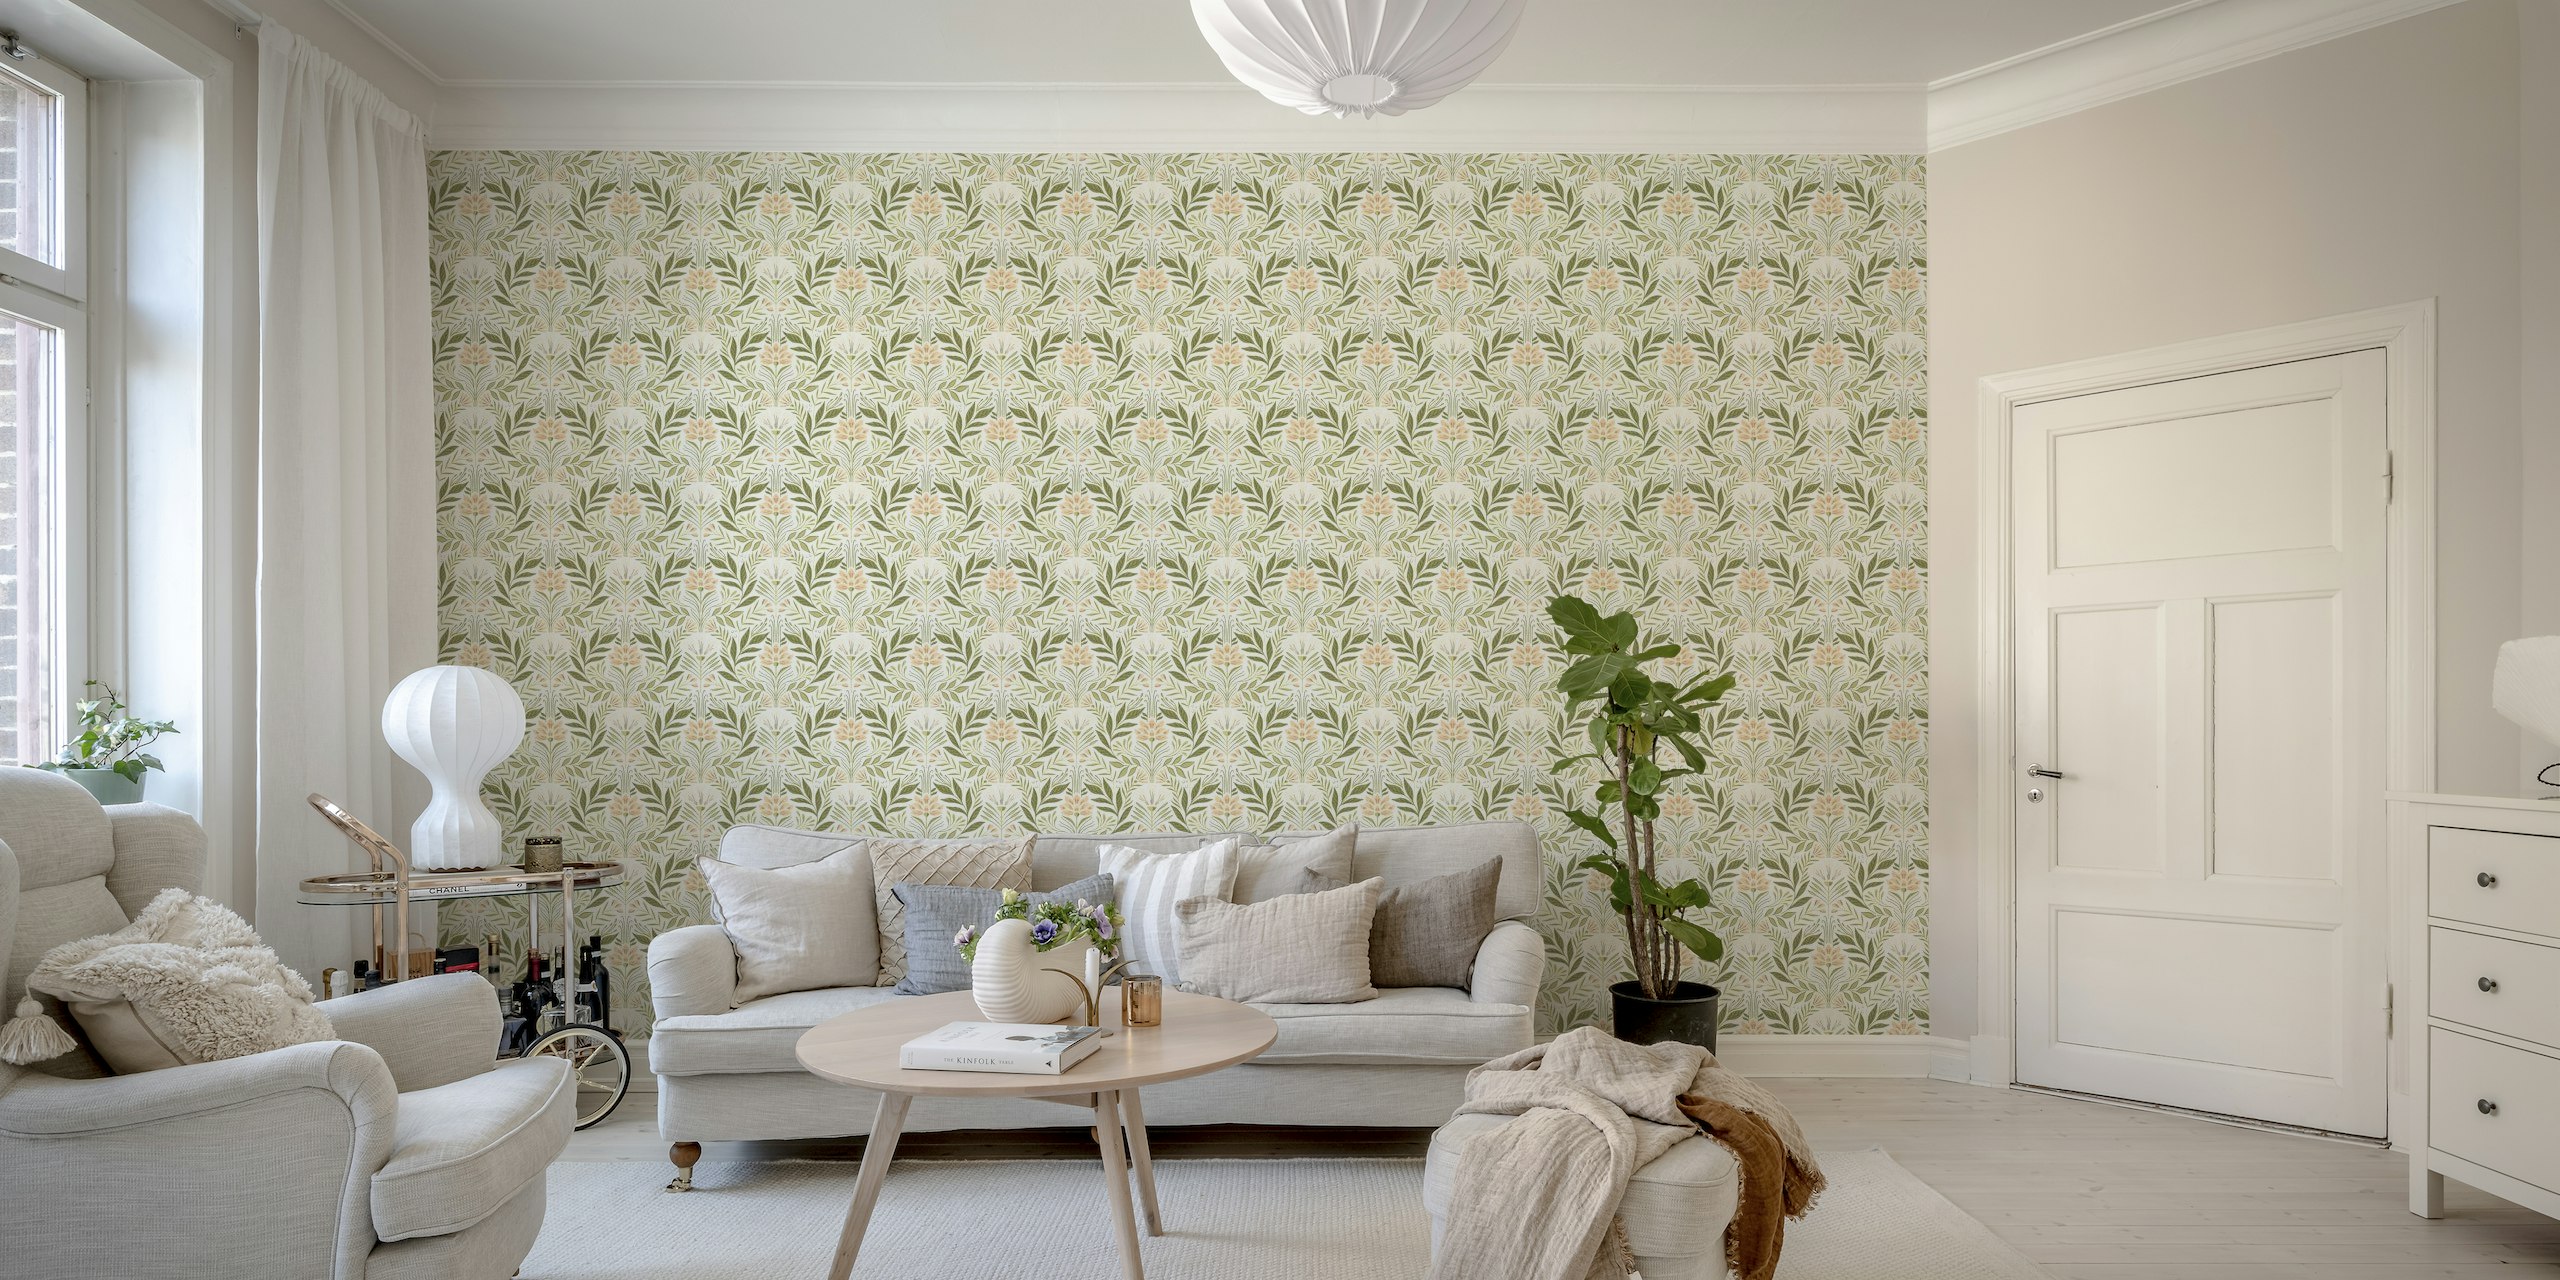 Symmetrisches Wandbild mit botanischem Muster in zartem Grün, Pfirsich und Elfenbein